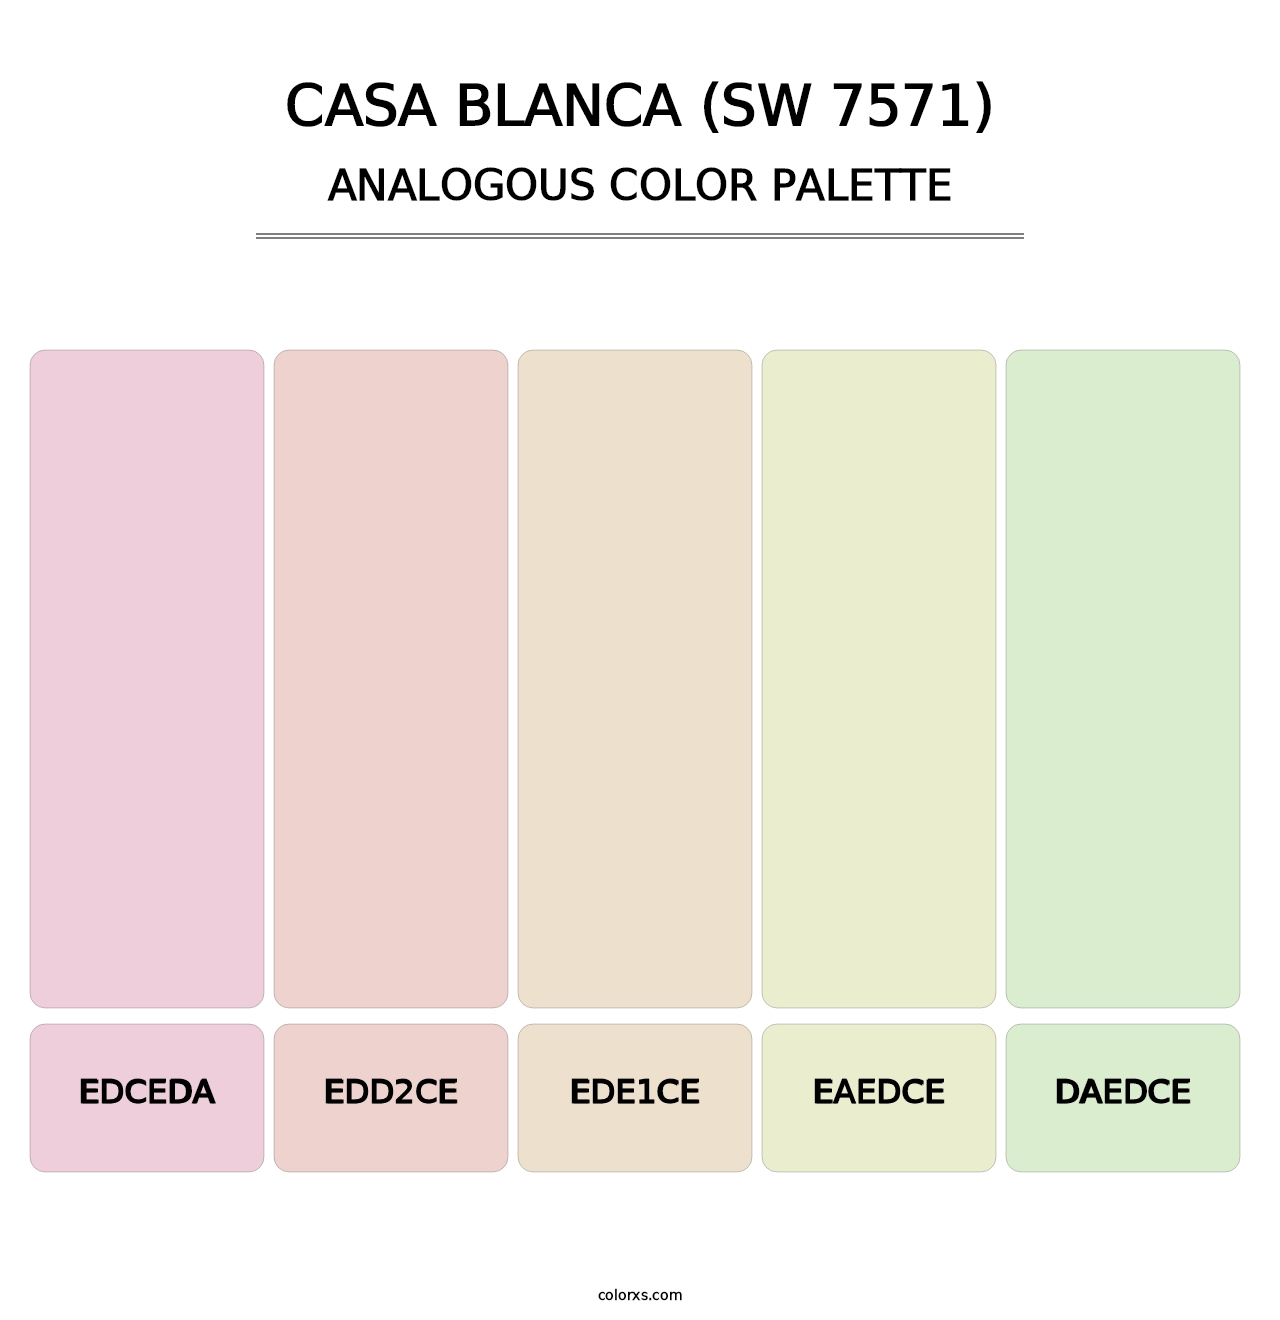 Casa Blanca (SW 7571) - Analogous Color Palette